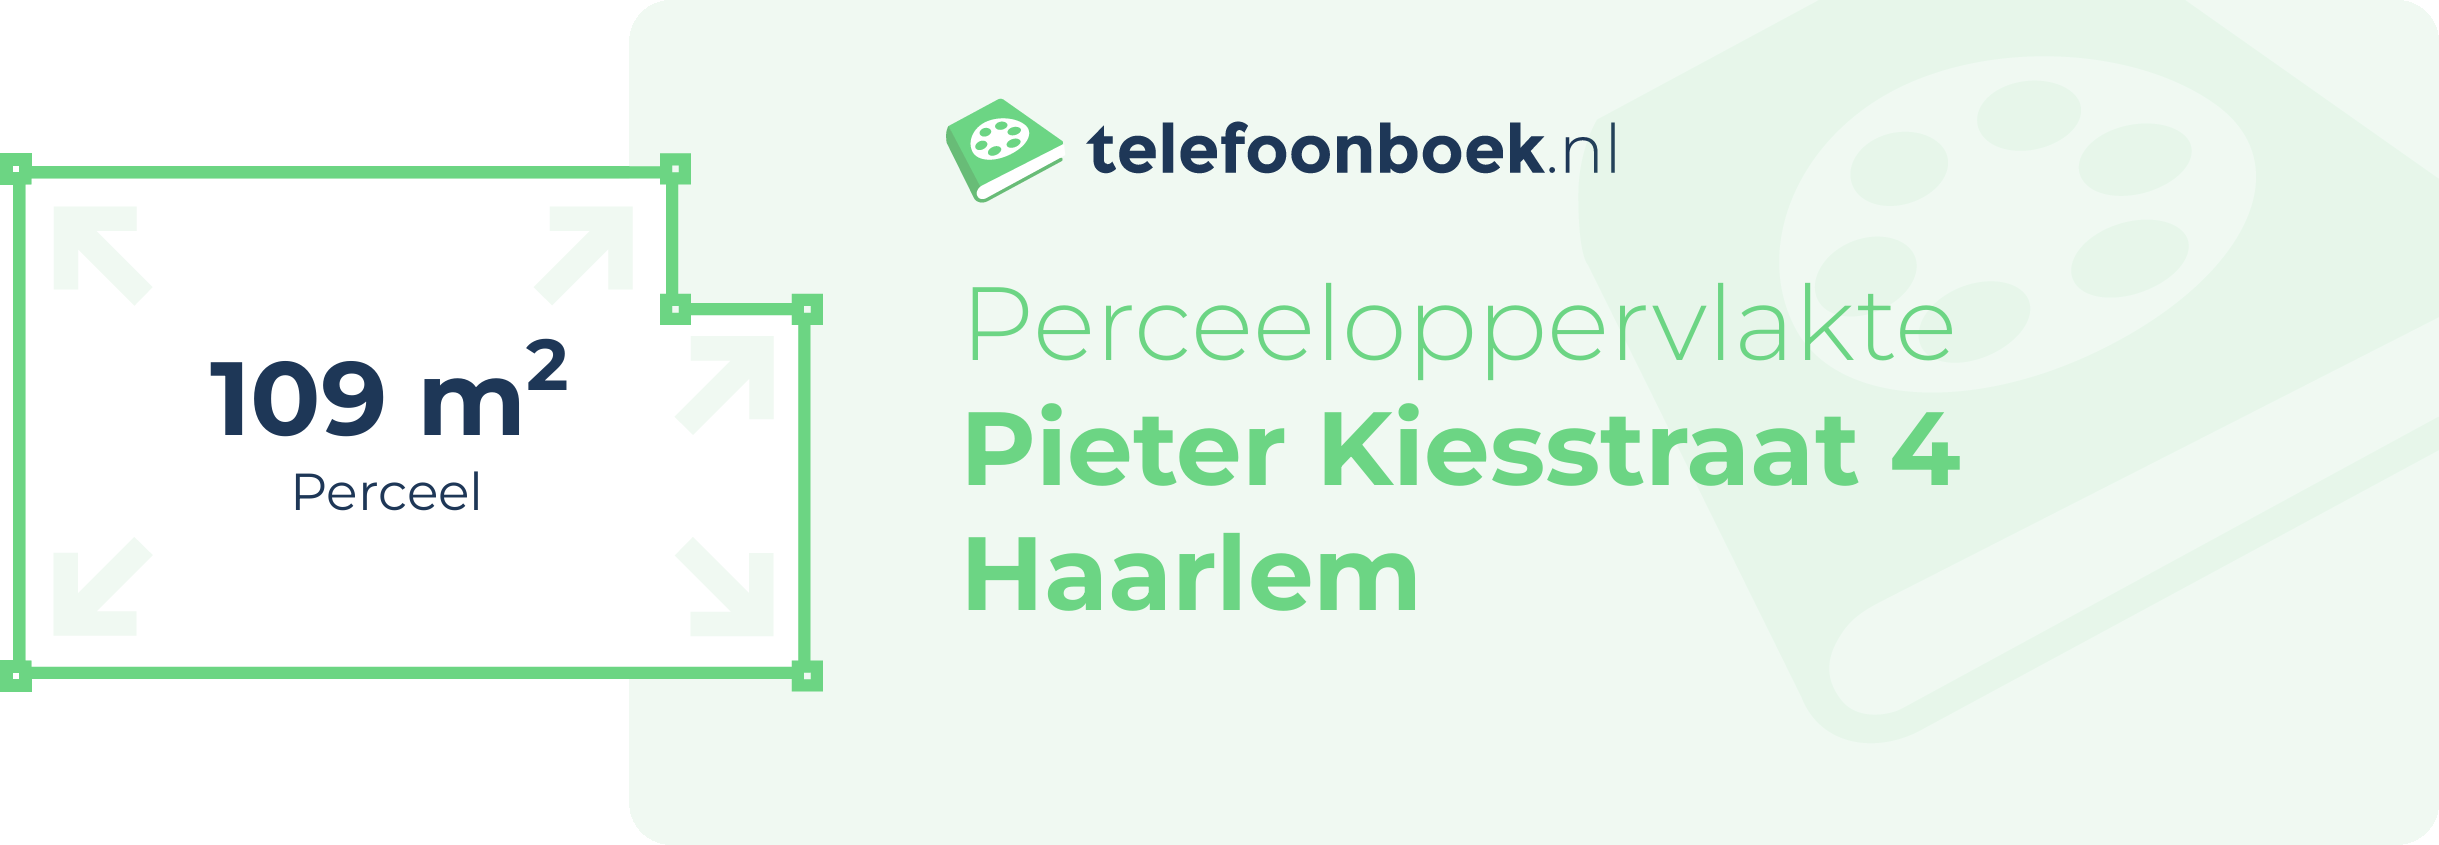 Perceeloppervlakte Pieter Kiesstraat 4 Haarlem